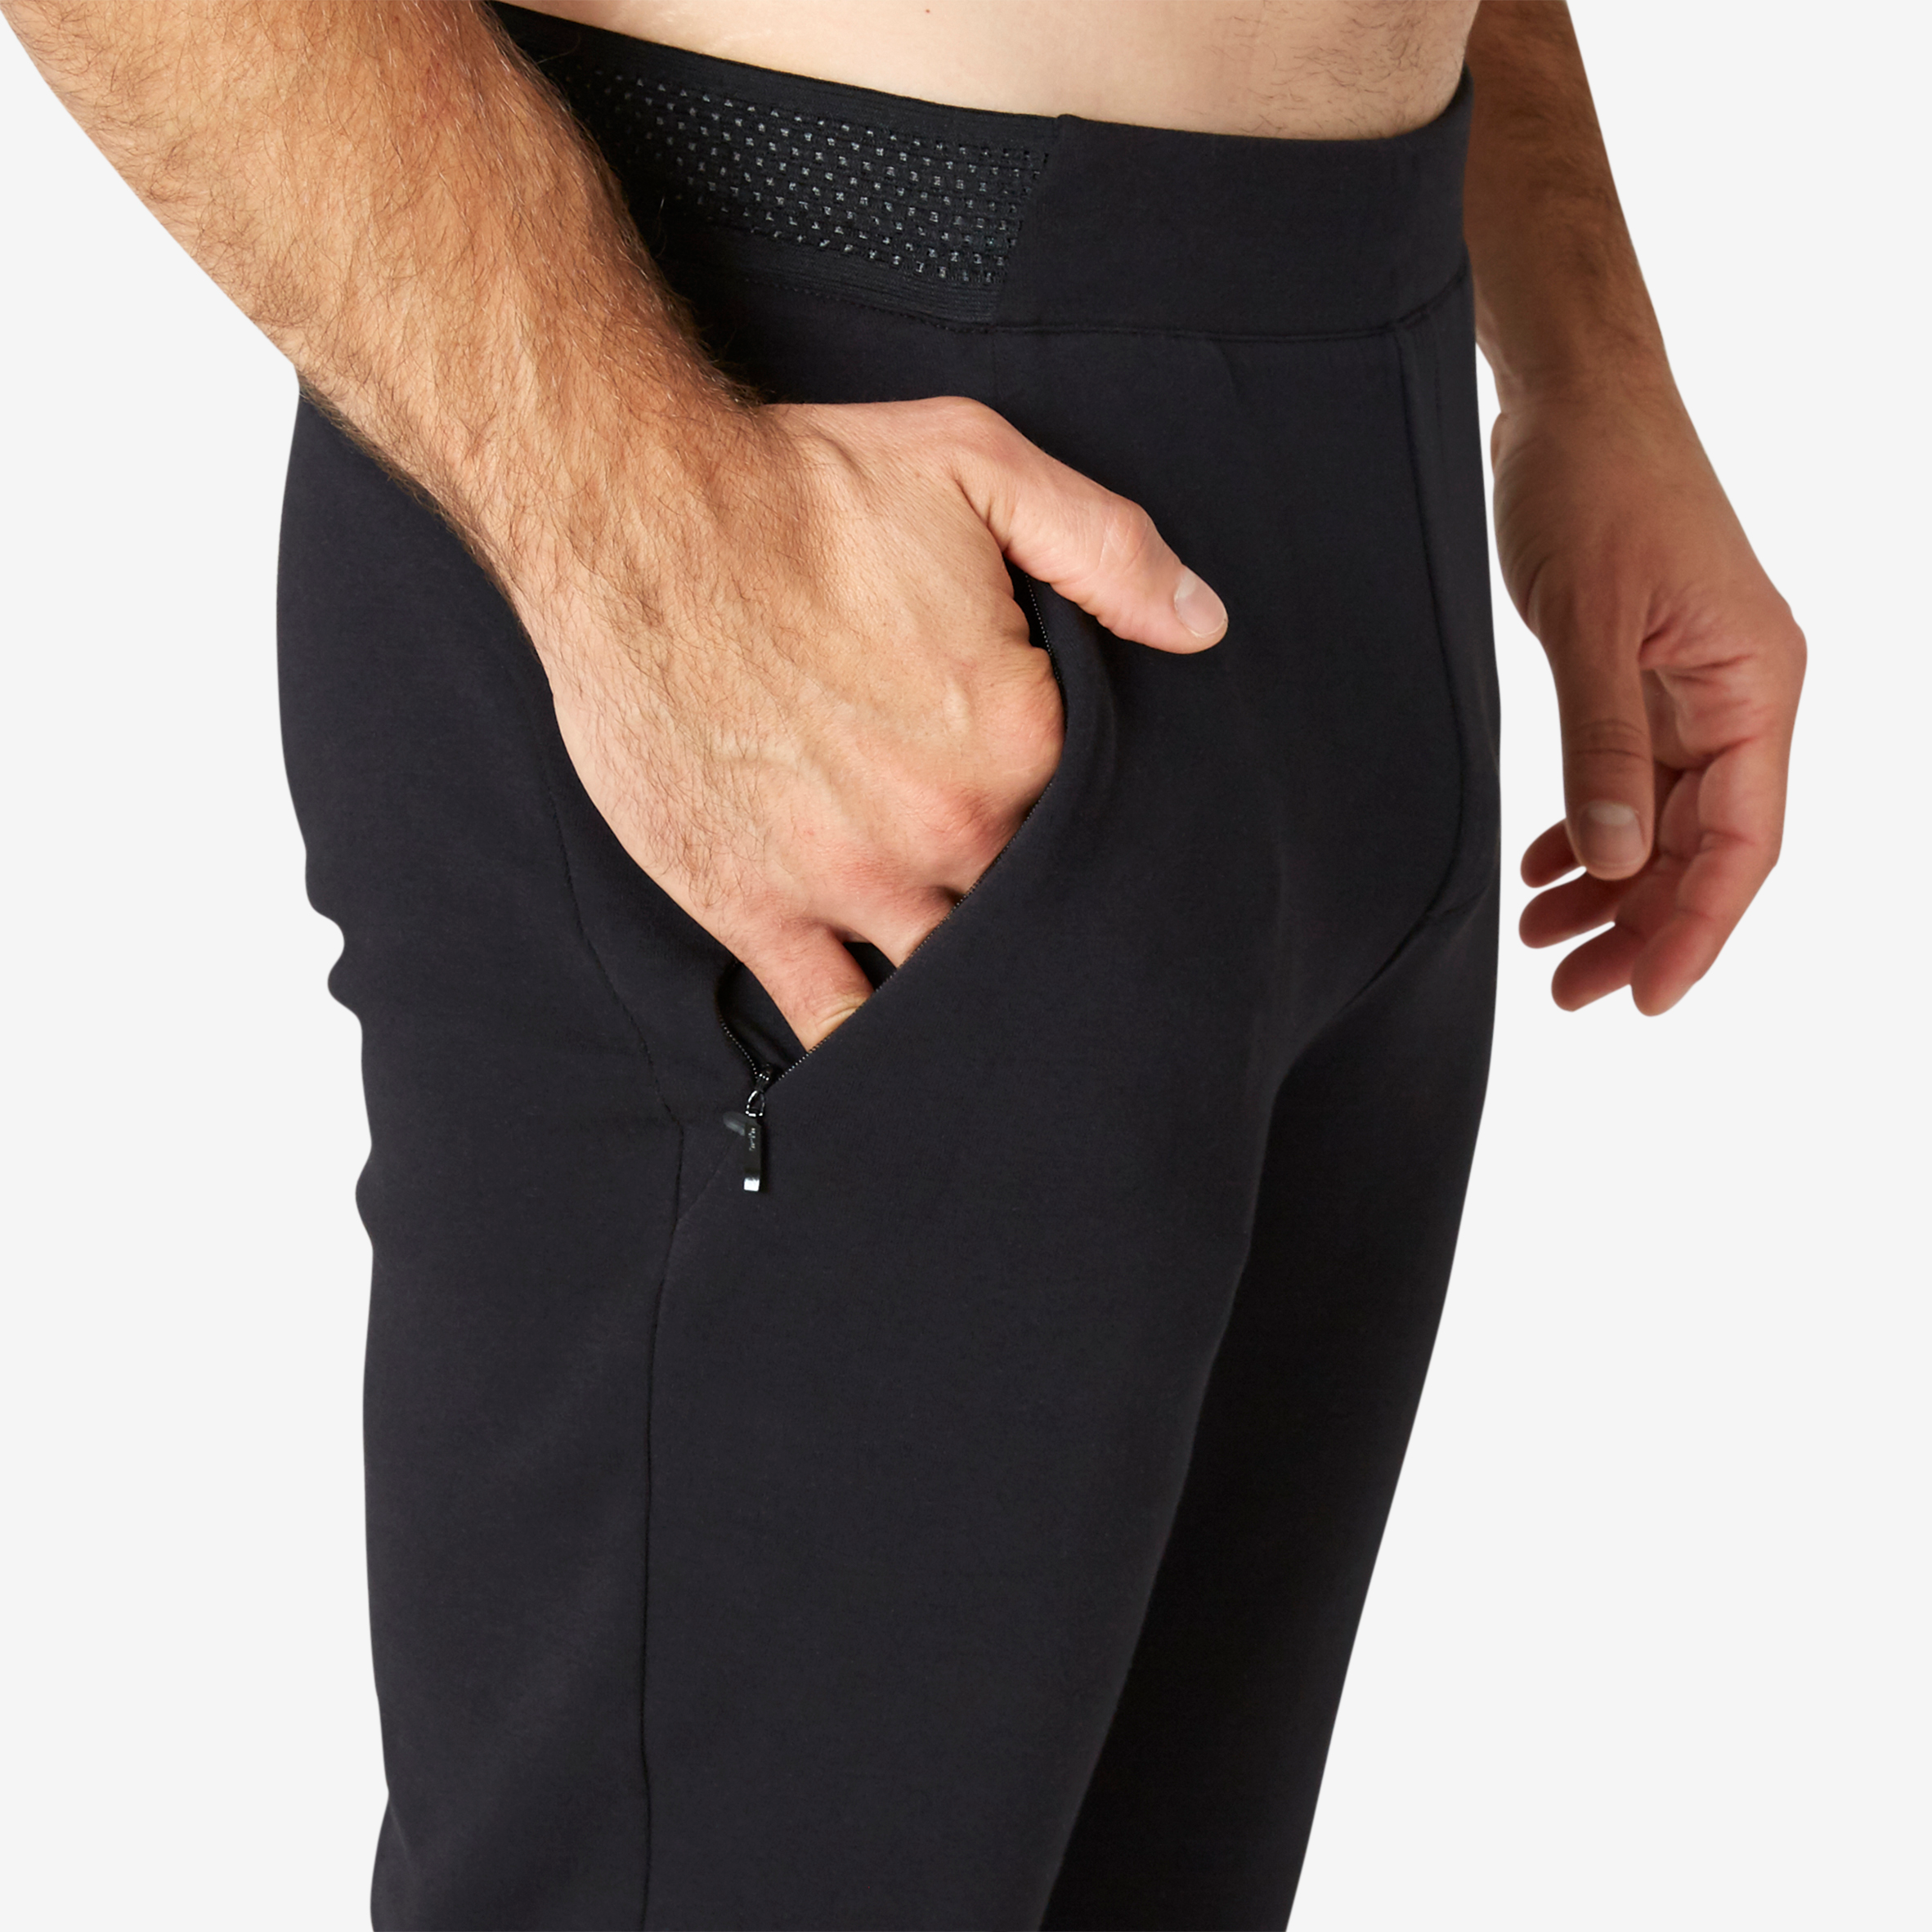 Acheter Pantalon de jogging homme Noir ? Bon et bon marché